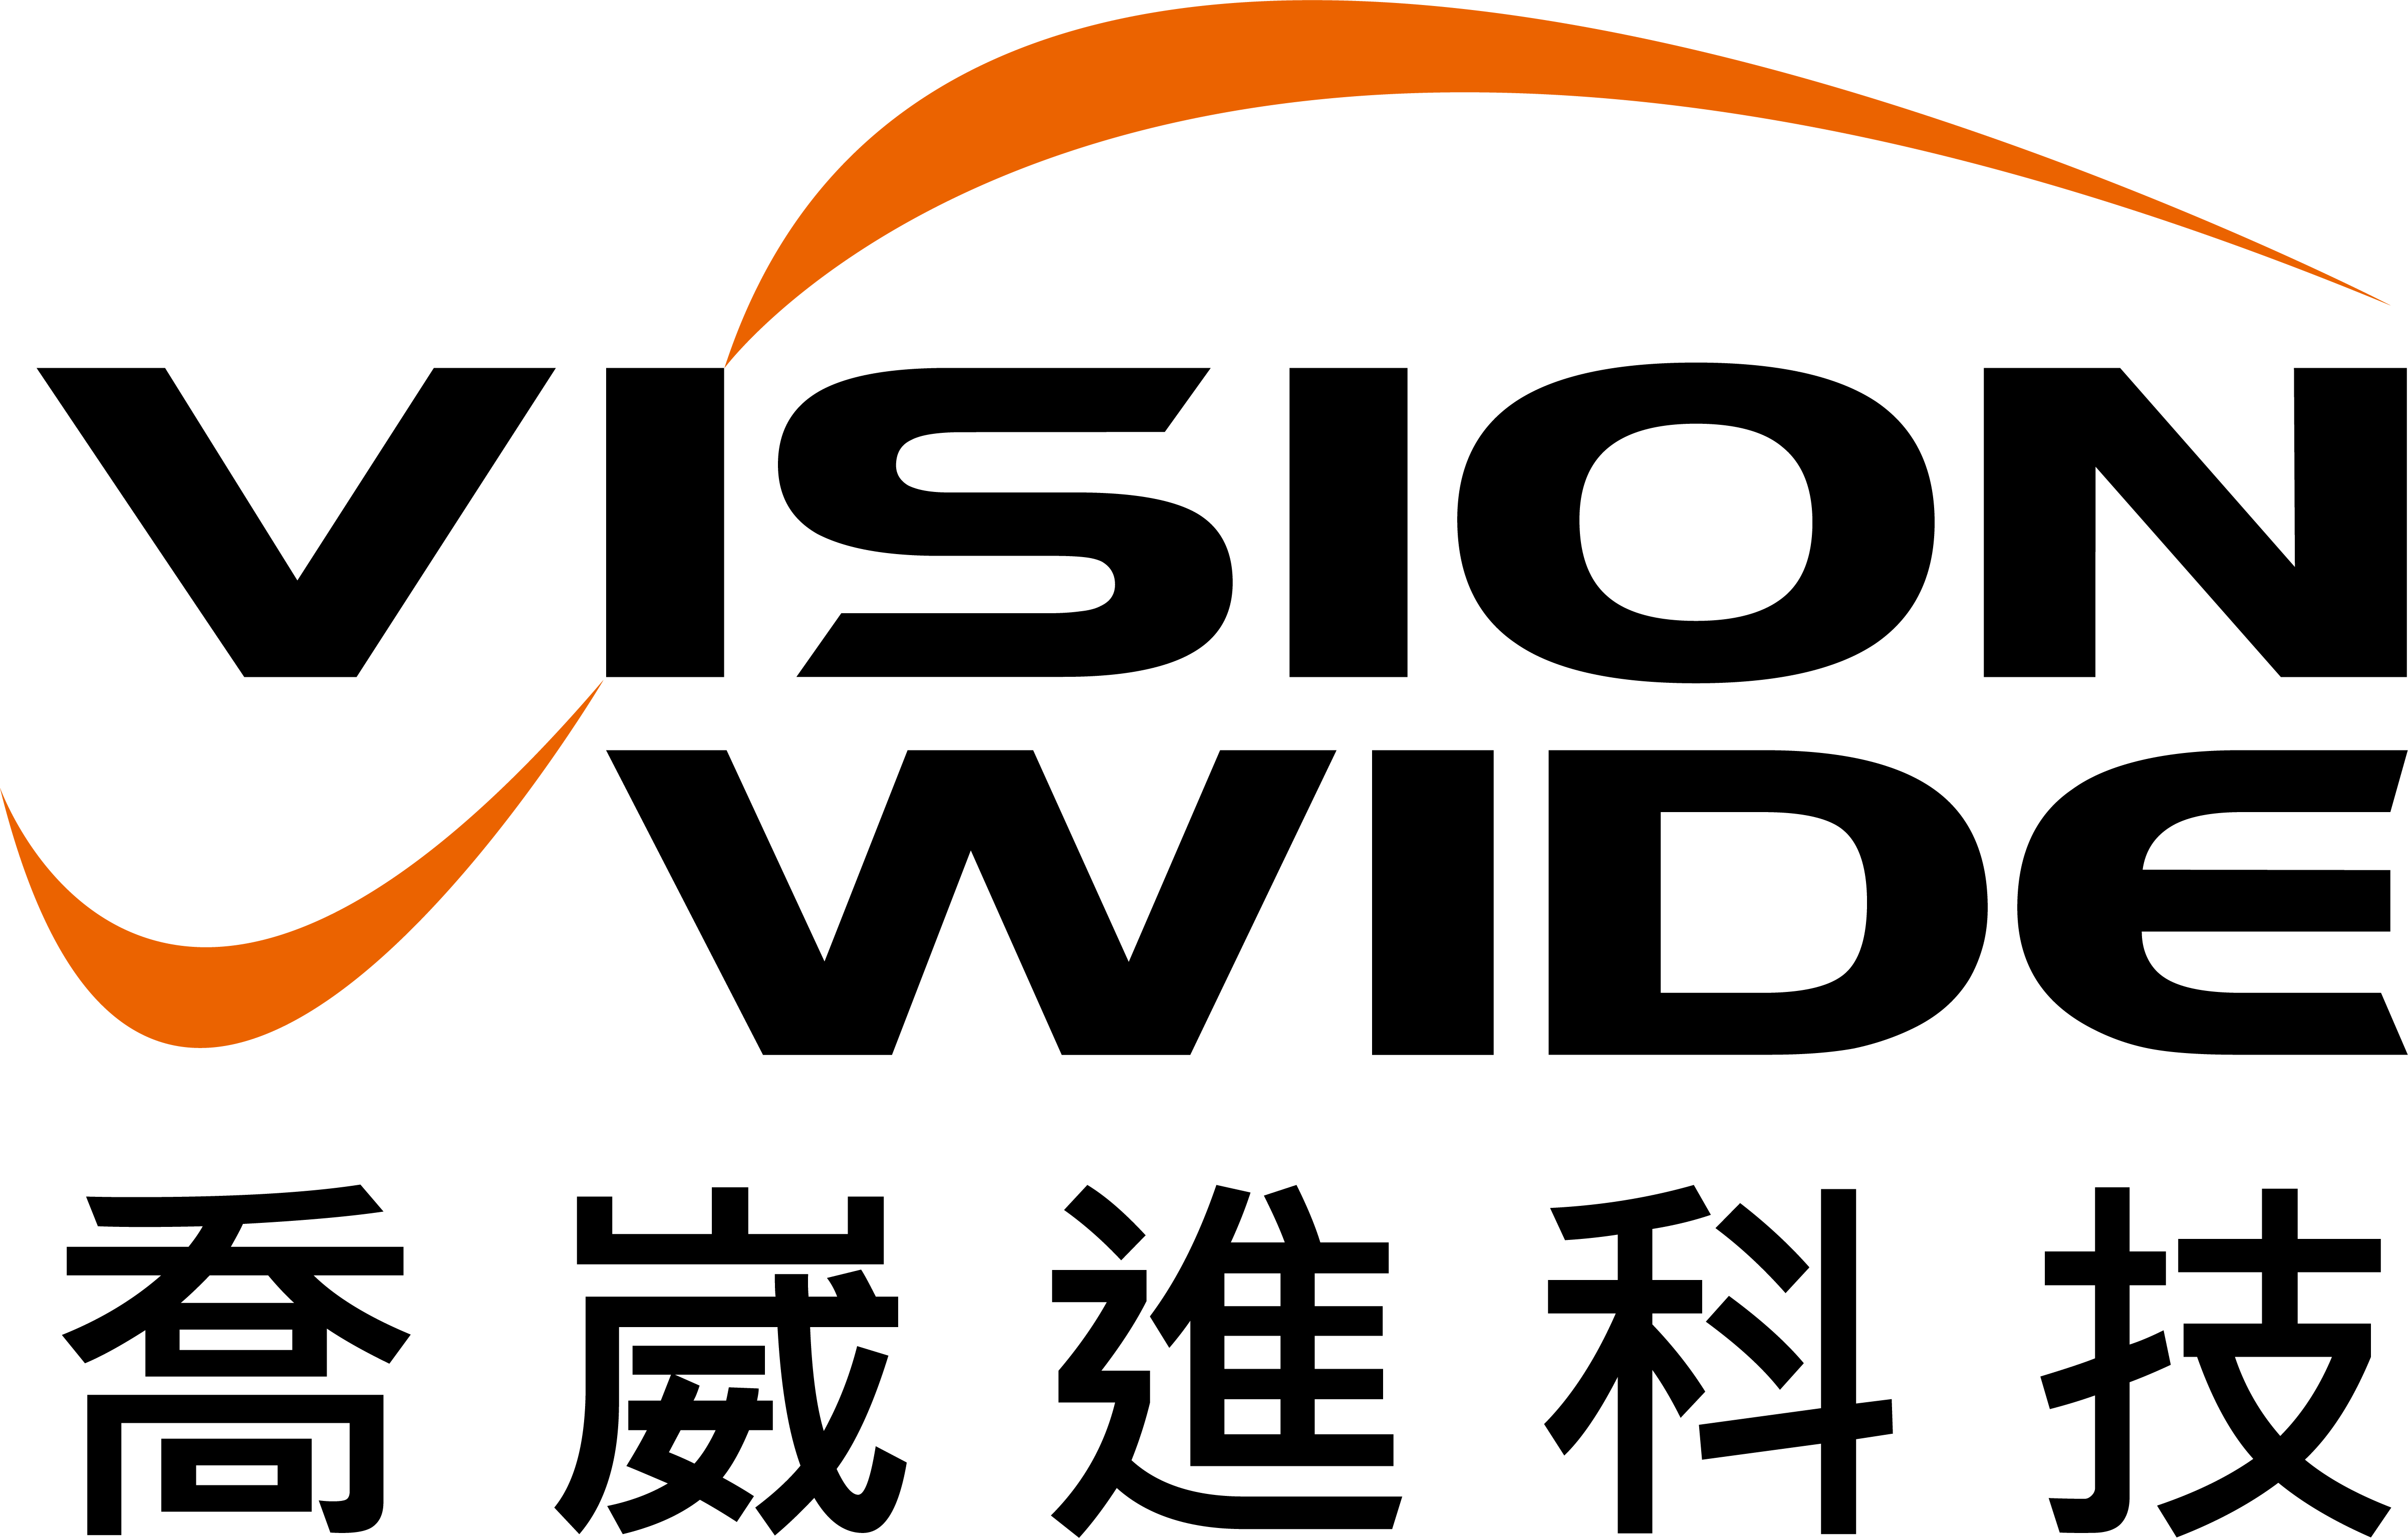 About|VISION WIDE TECH CO., LTD.